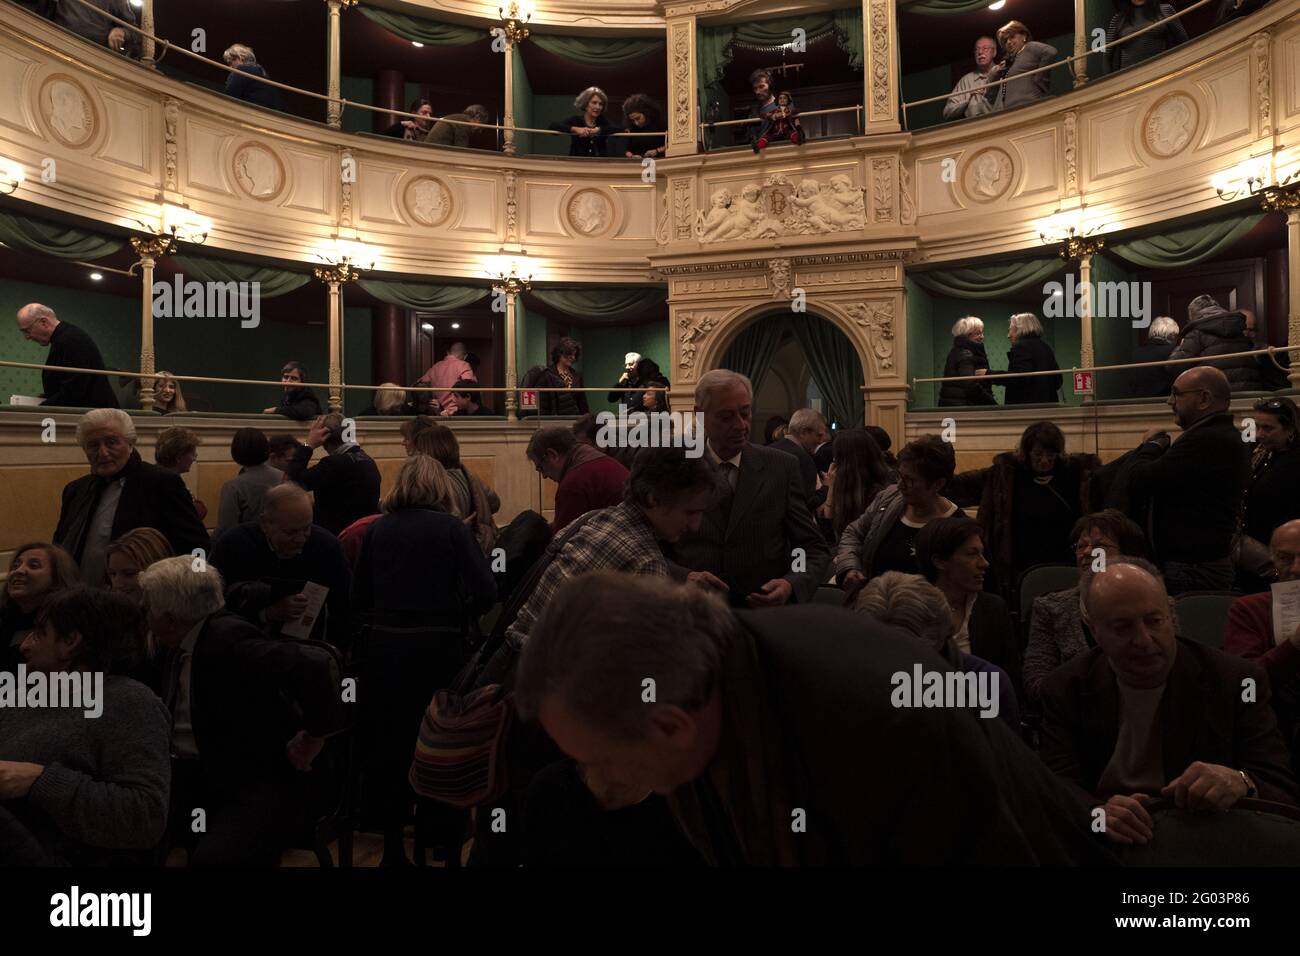 Les gens assistent à un spectacle de théâtre de marionnettes de la compagnie historique milanese Marionette Colla, au théâtre historique de Gerolamo fondé en 1868, à Milan. Banque D'Images